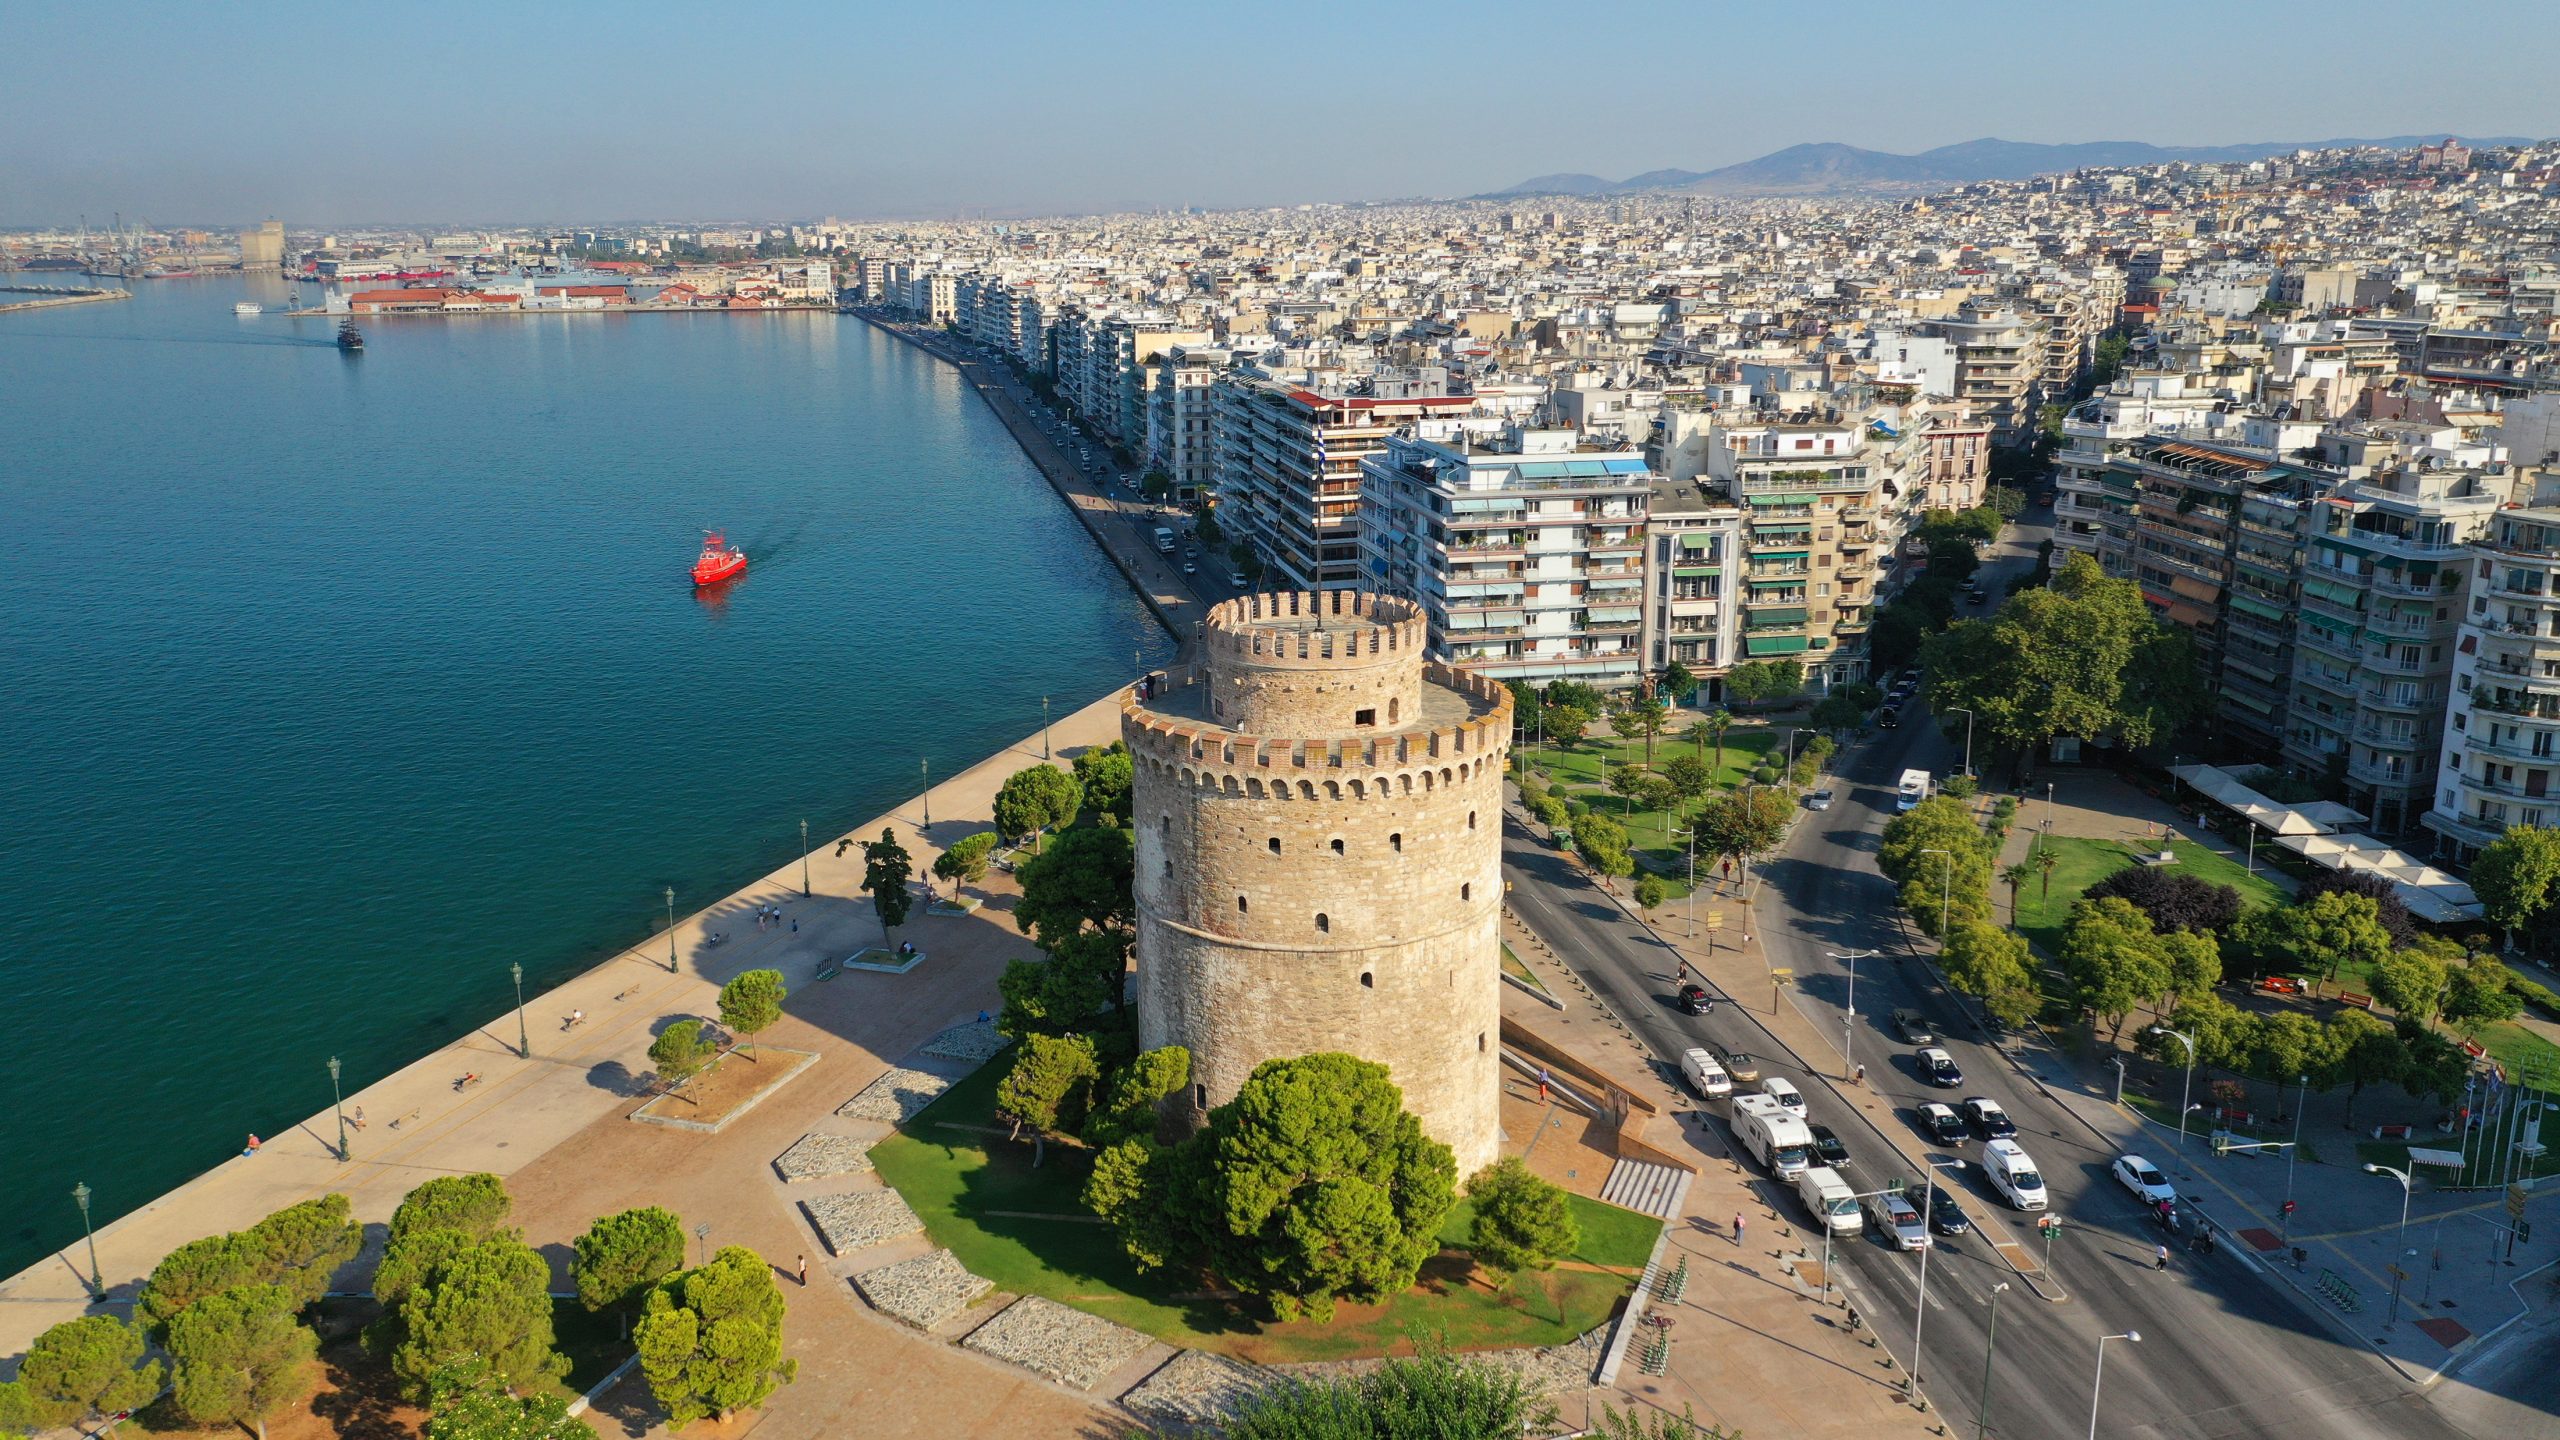 Θεσσαλονίκη: Τα μεγάλα πρότζεκτ στη δυτική είσοδο και πώς επηρεάζουν την αγορά ακινήτων